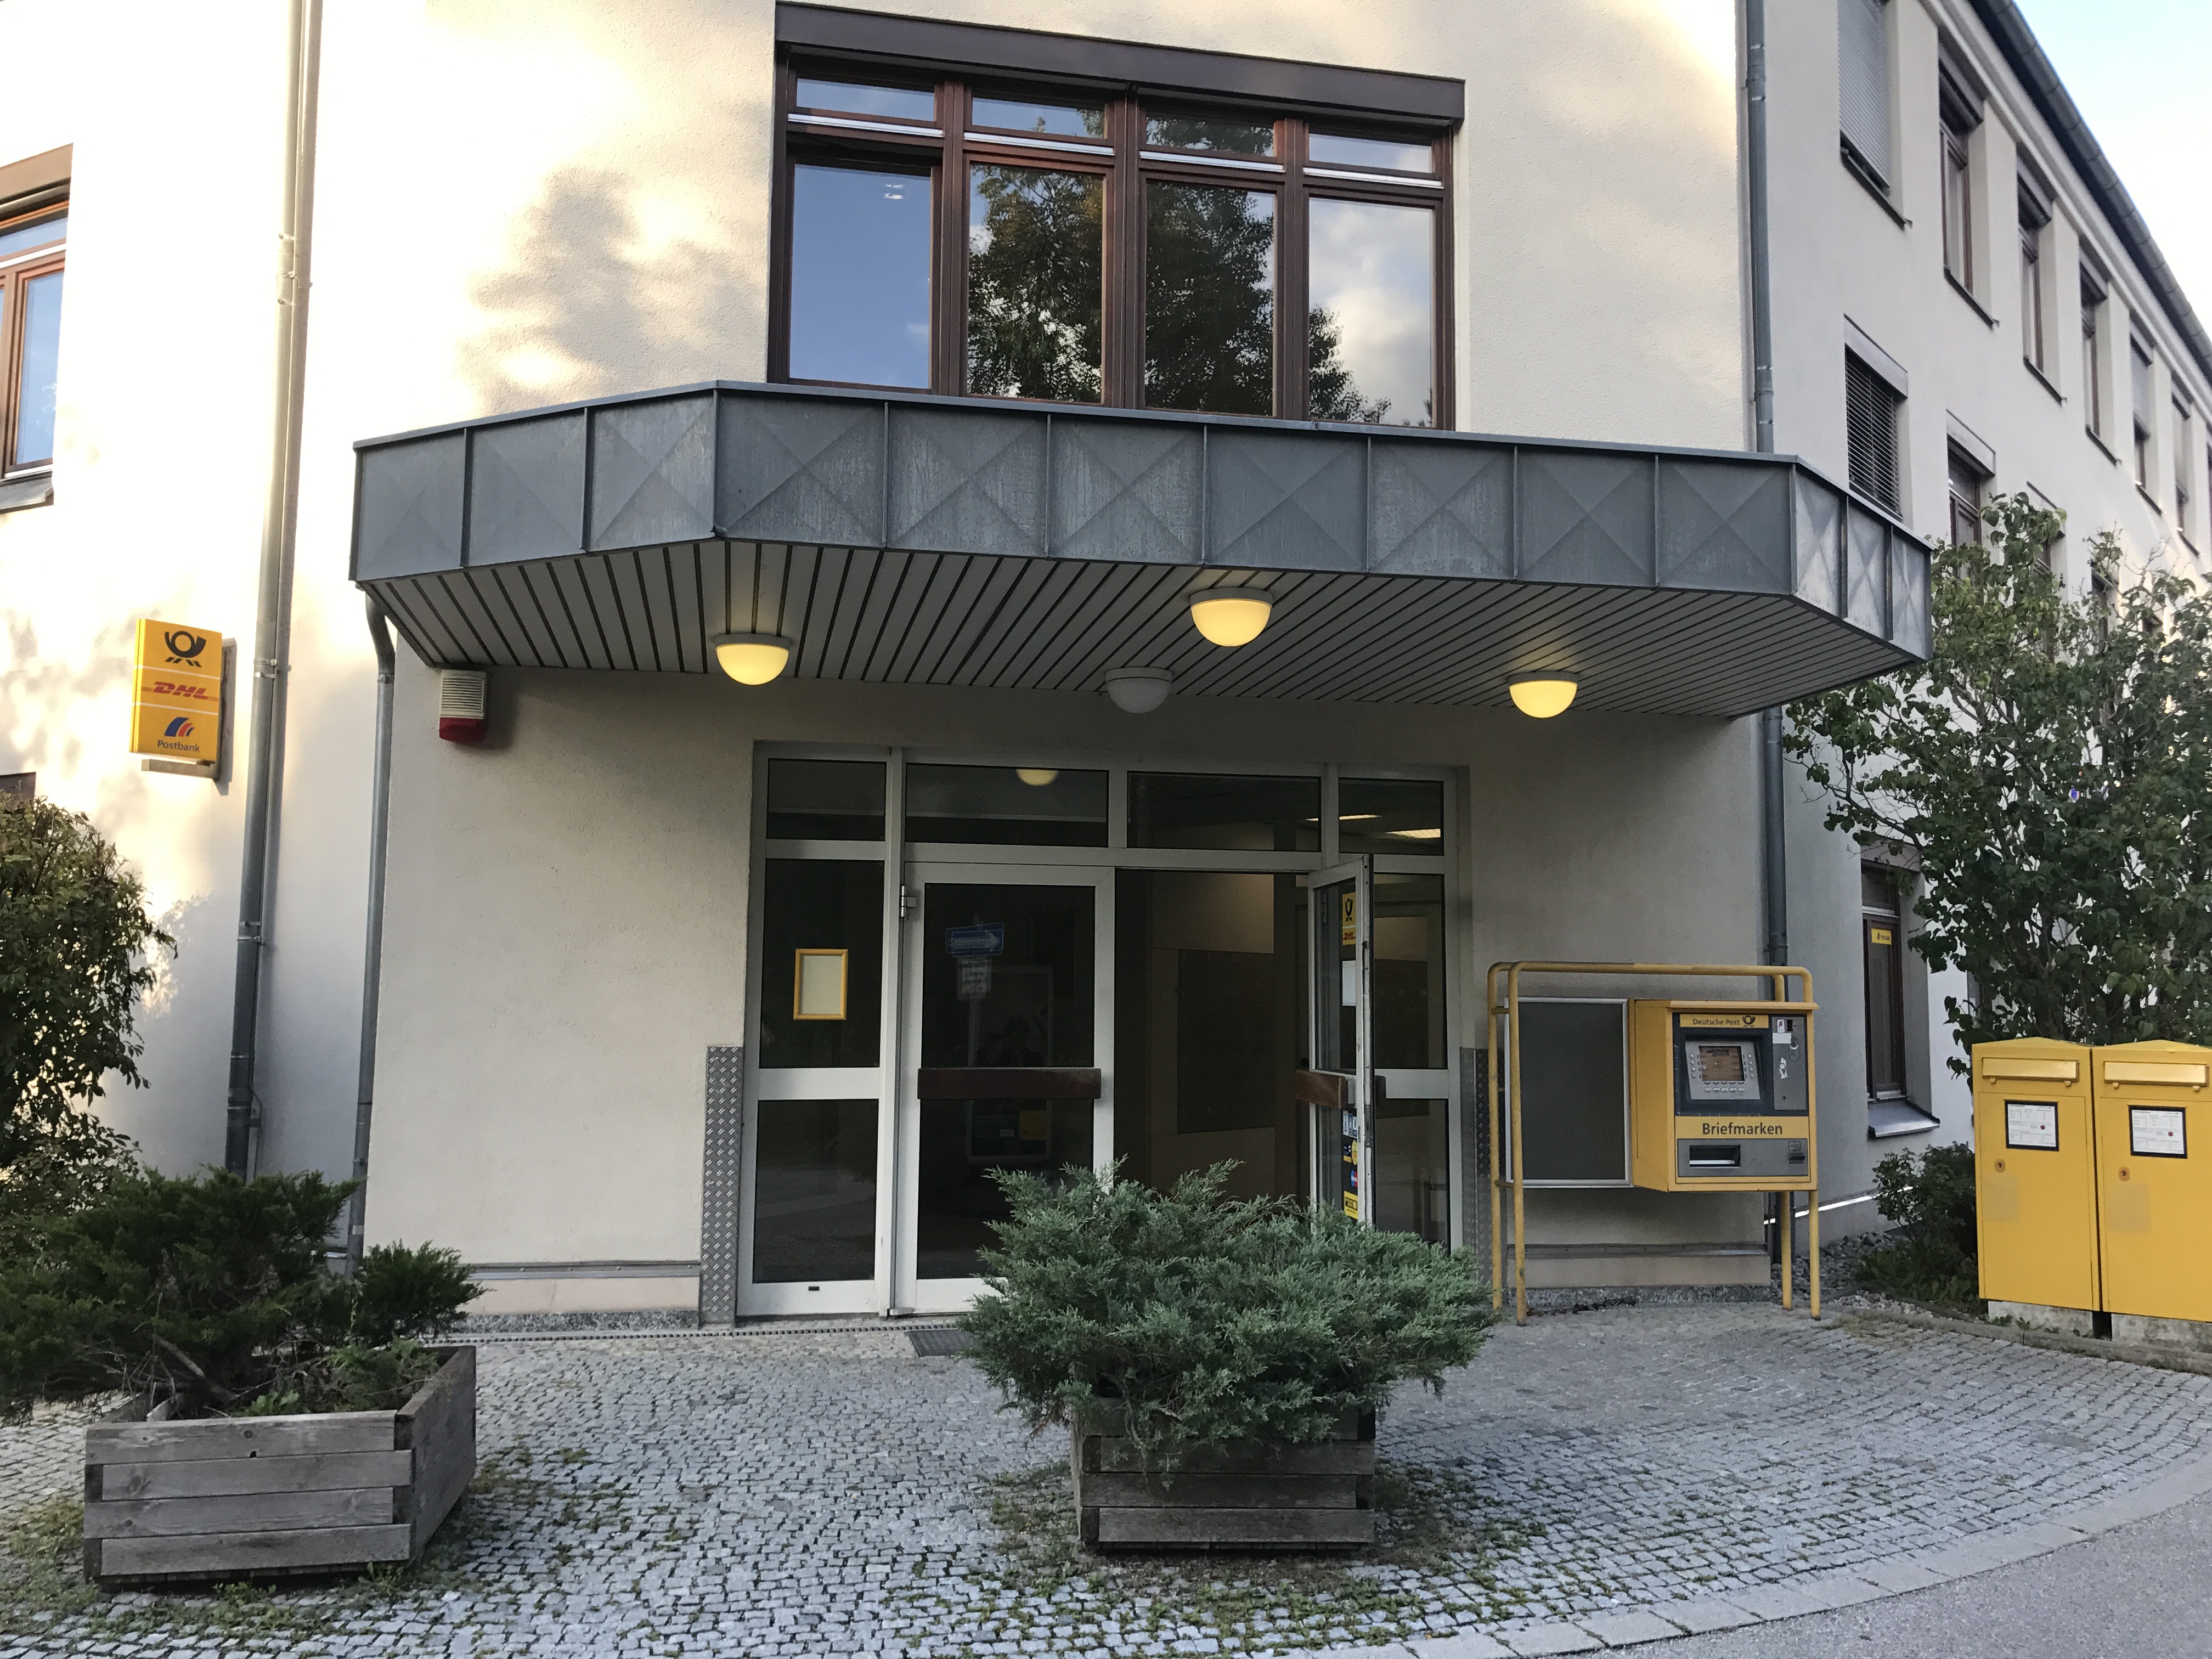 Bild 2 Postbank Finanzcenter in Ottobrunn